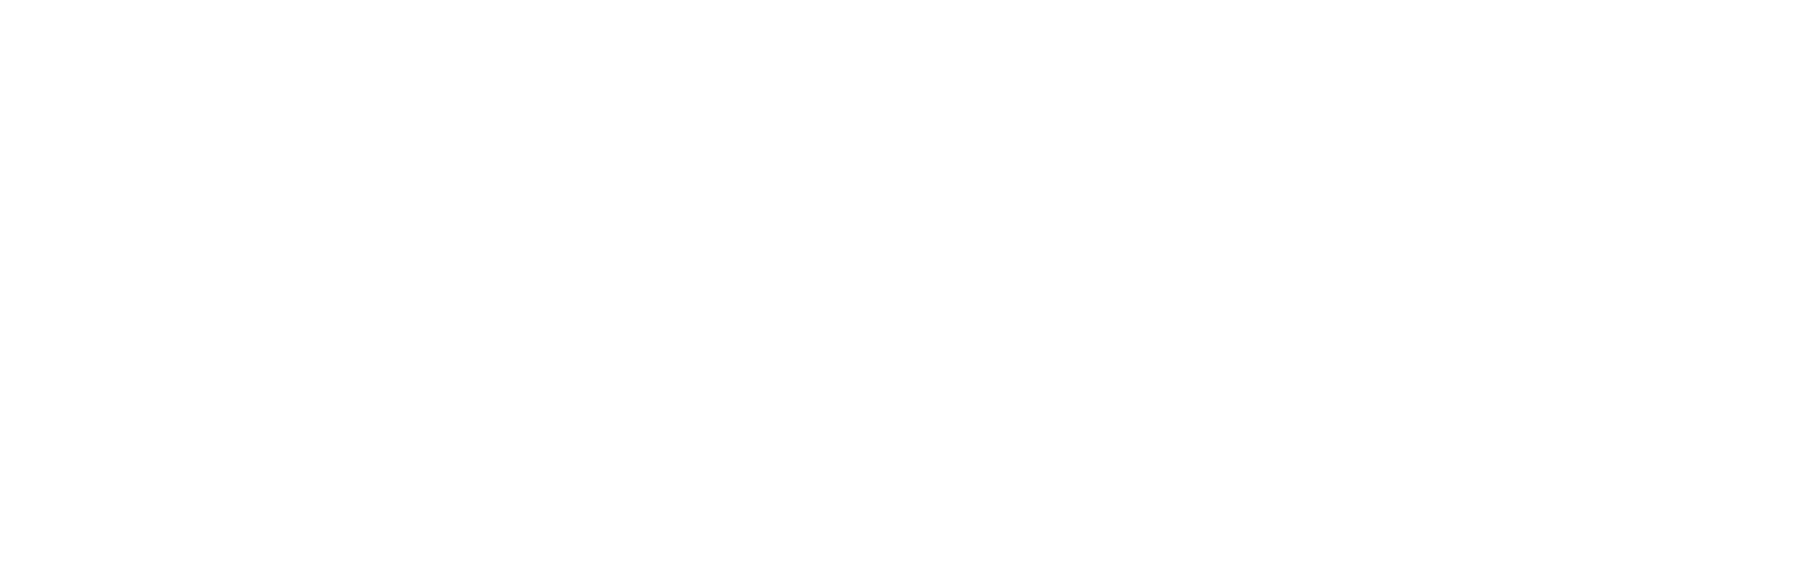 Travefy logo